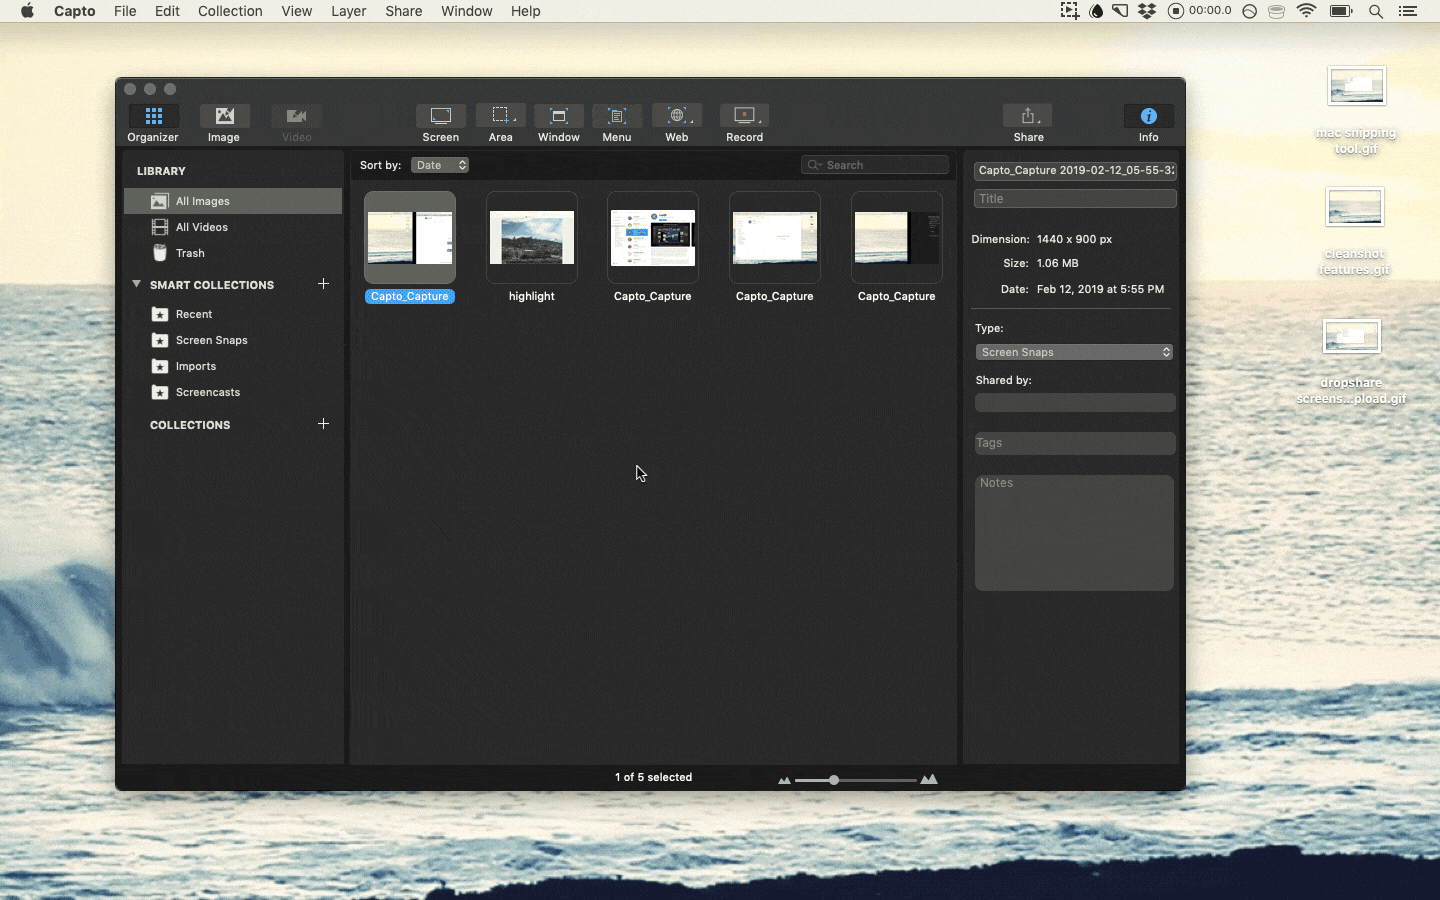 screen snip on mac